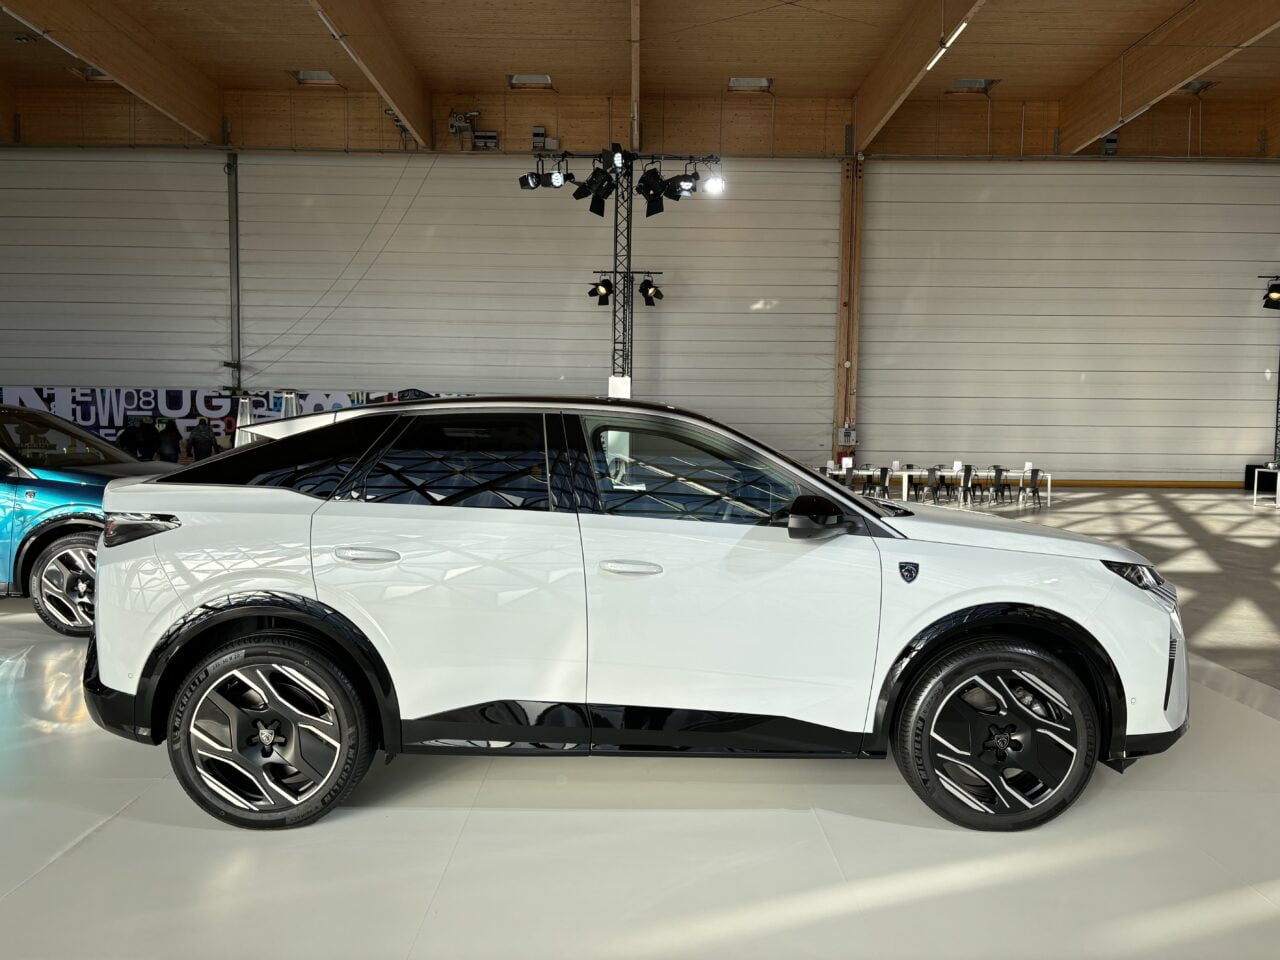 Biały samochód elektryczny SUV z charakterystycznym wzorem na bocznych drzwiach, wystawiony w jasnym salonie z drewnianym stropem.